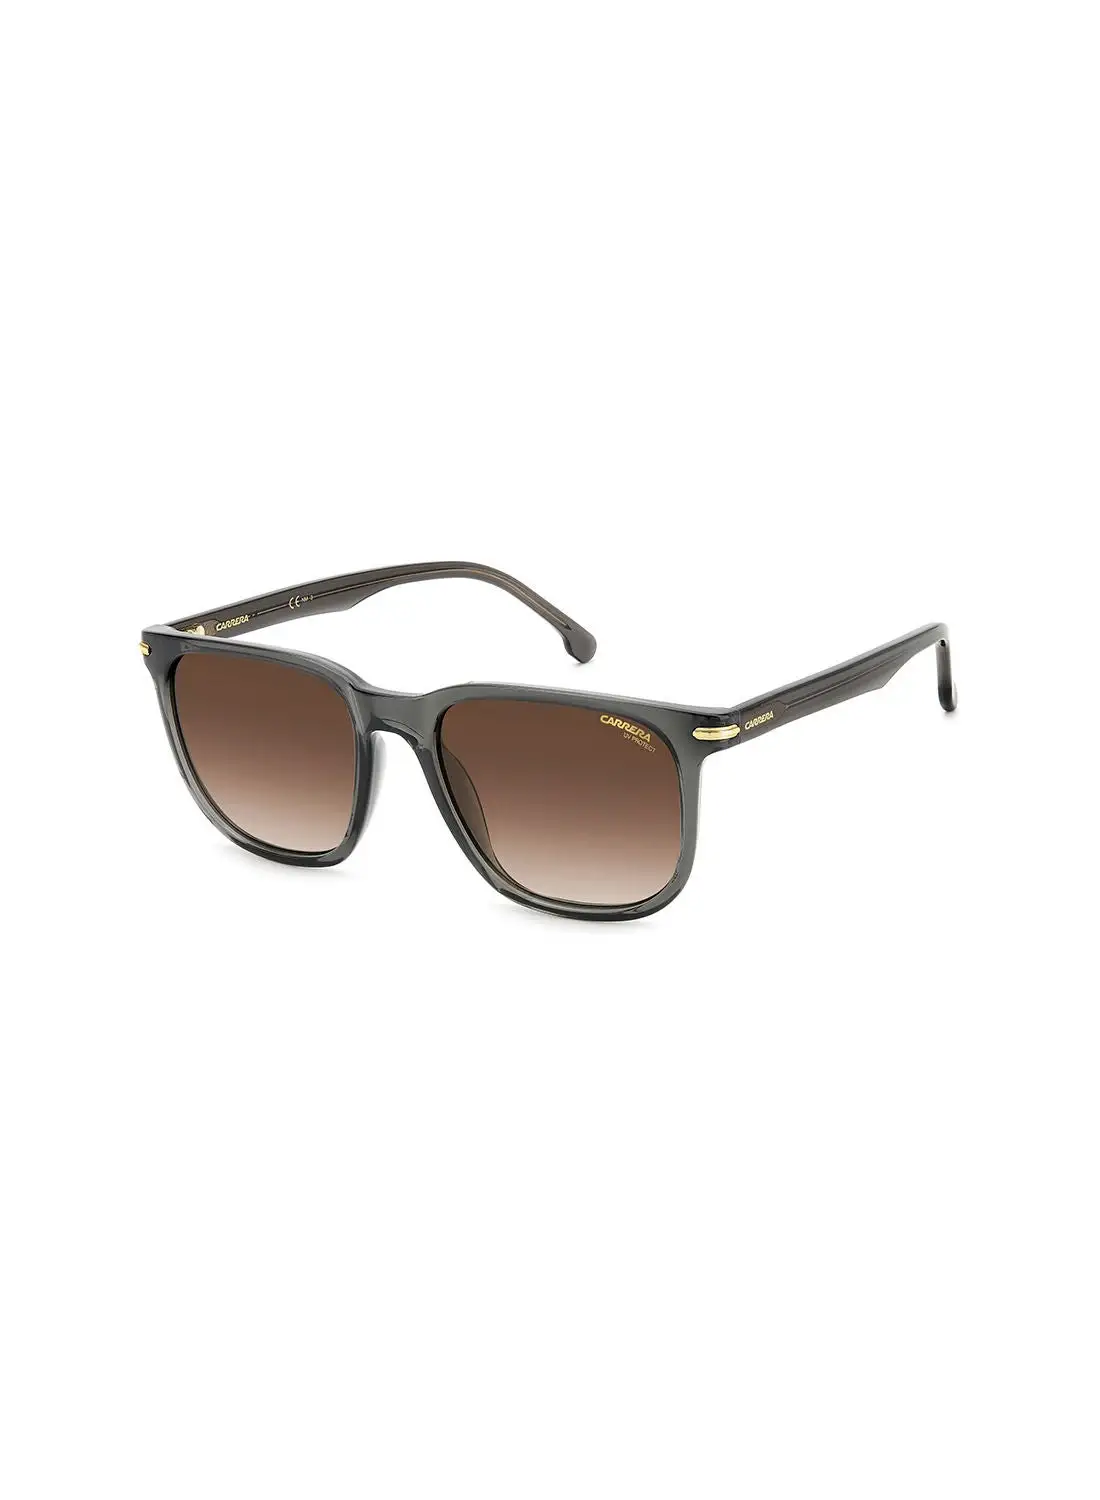 نظارة شمسية مربعة للحماية من الأشعة فوق البنفسجية للجنسين من كاريرا - Carrera 300/S Gray 54 - مقاس العدسة: 54 ملم